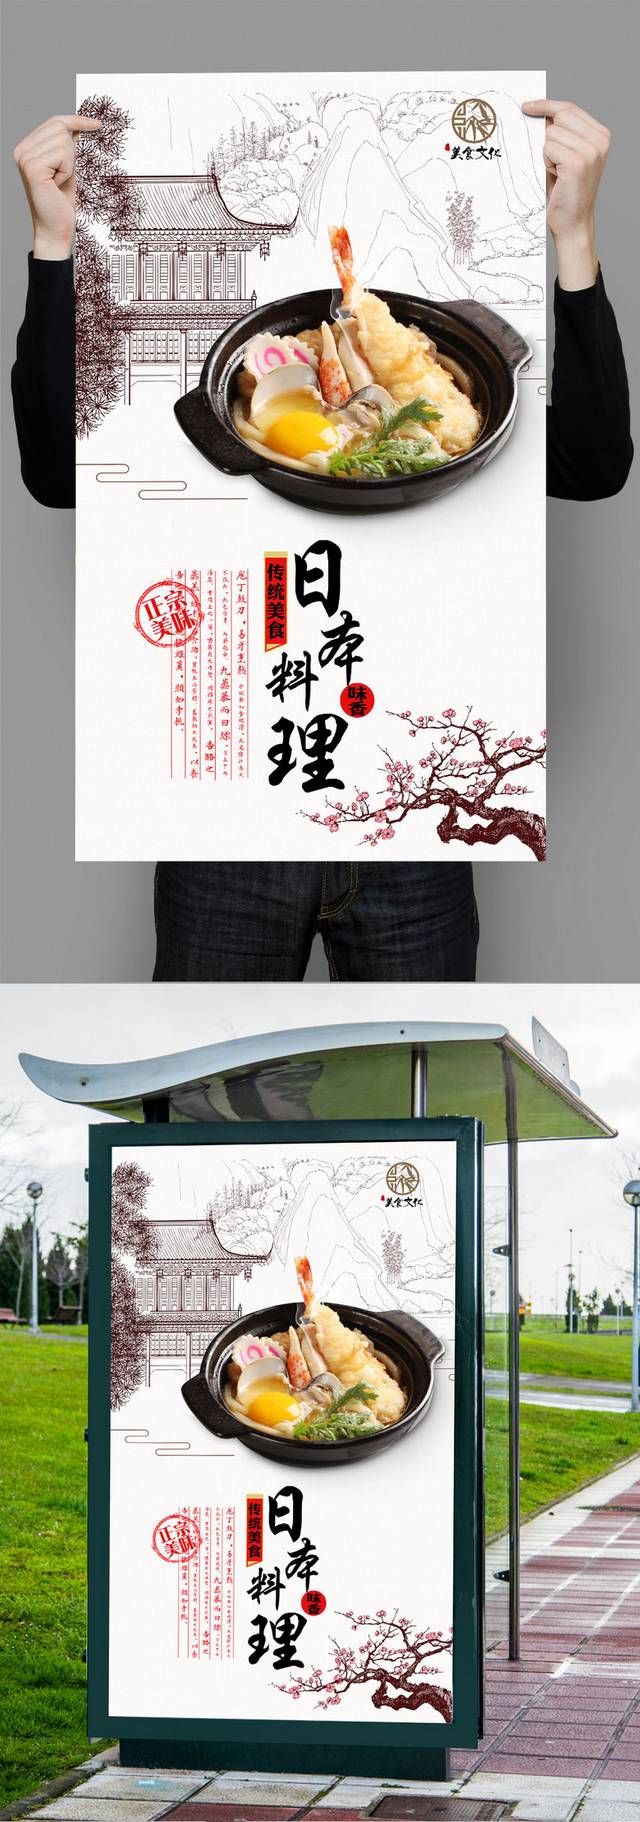 日本料理创意海报设计